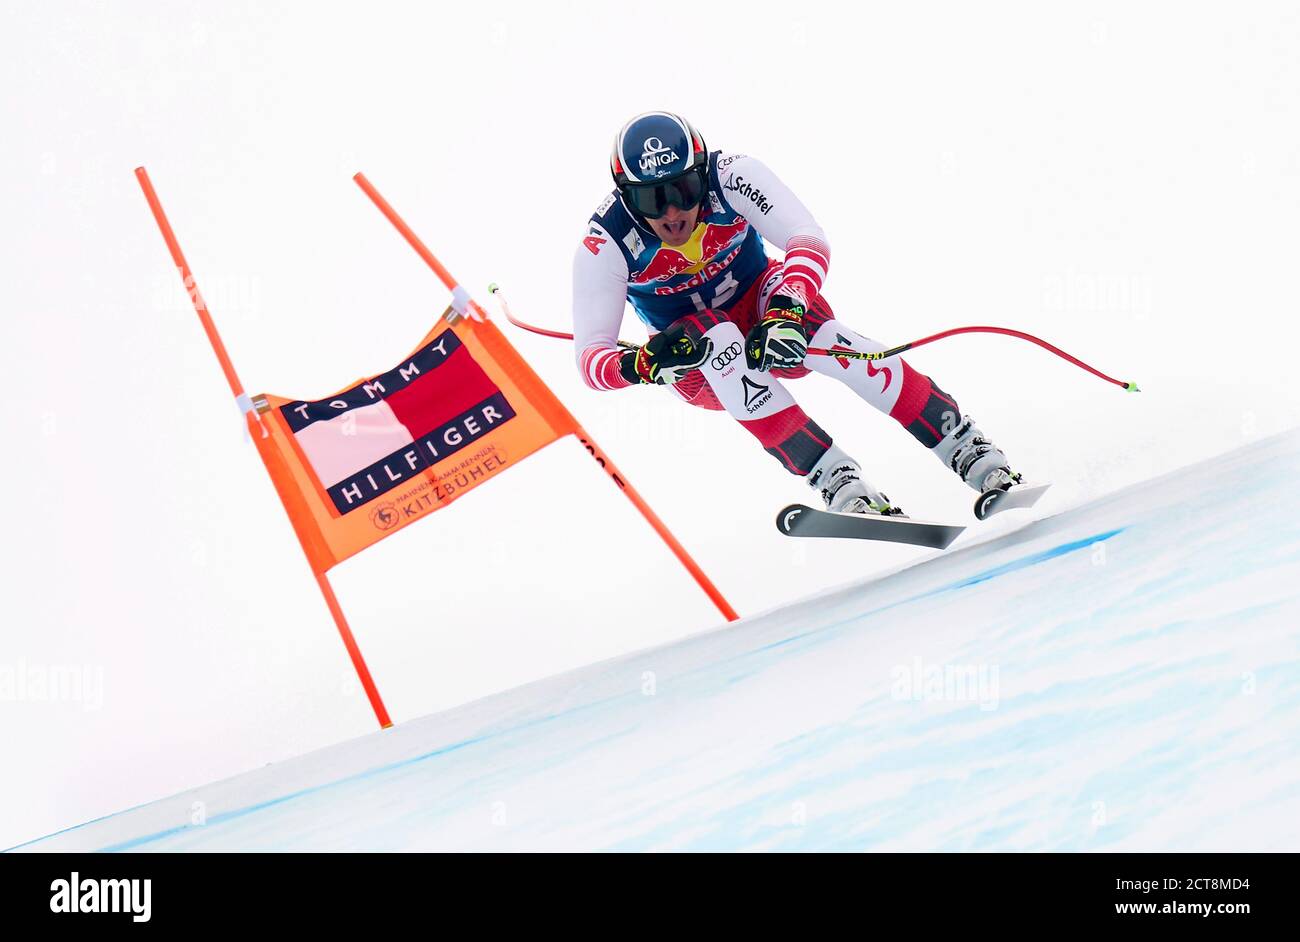 Matthias Mayer sur le chemin de la victoire lors de l'épreuve de descente des hommes pour la coupe du monde de ski alpin FIS à Kitzbuhel. CRÉDIT PHOTO : MARK PAIN / ALAMY Banque D'Images